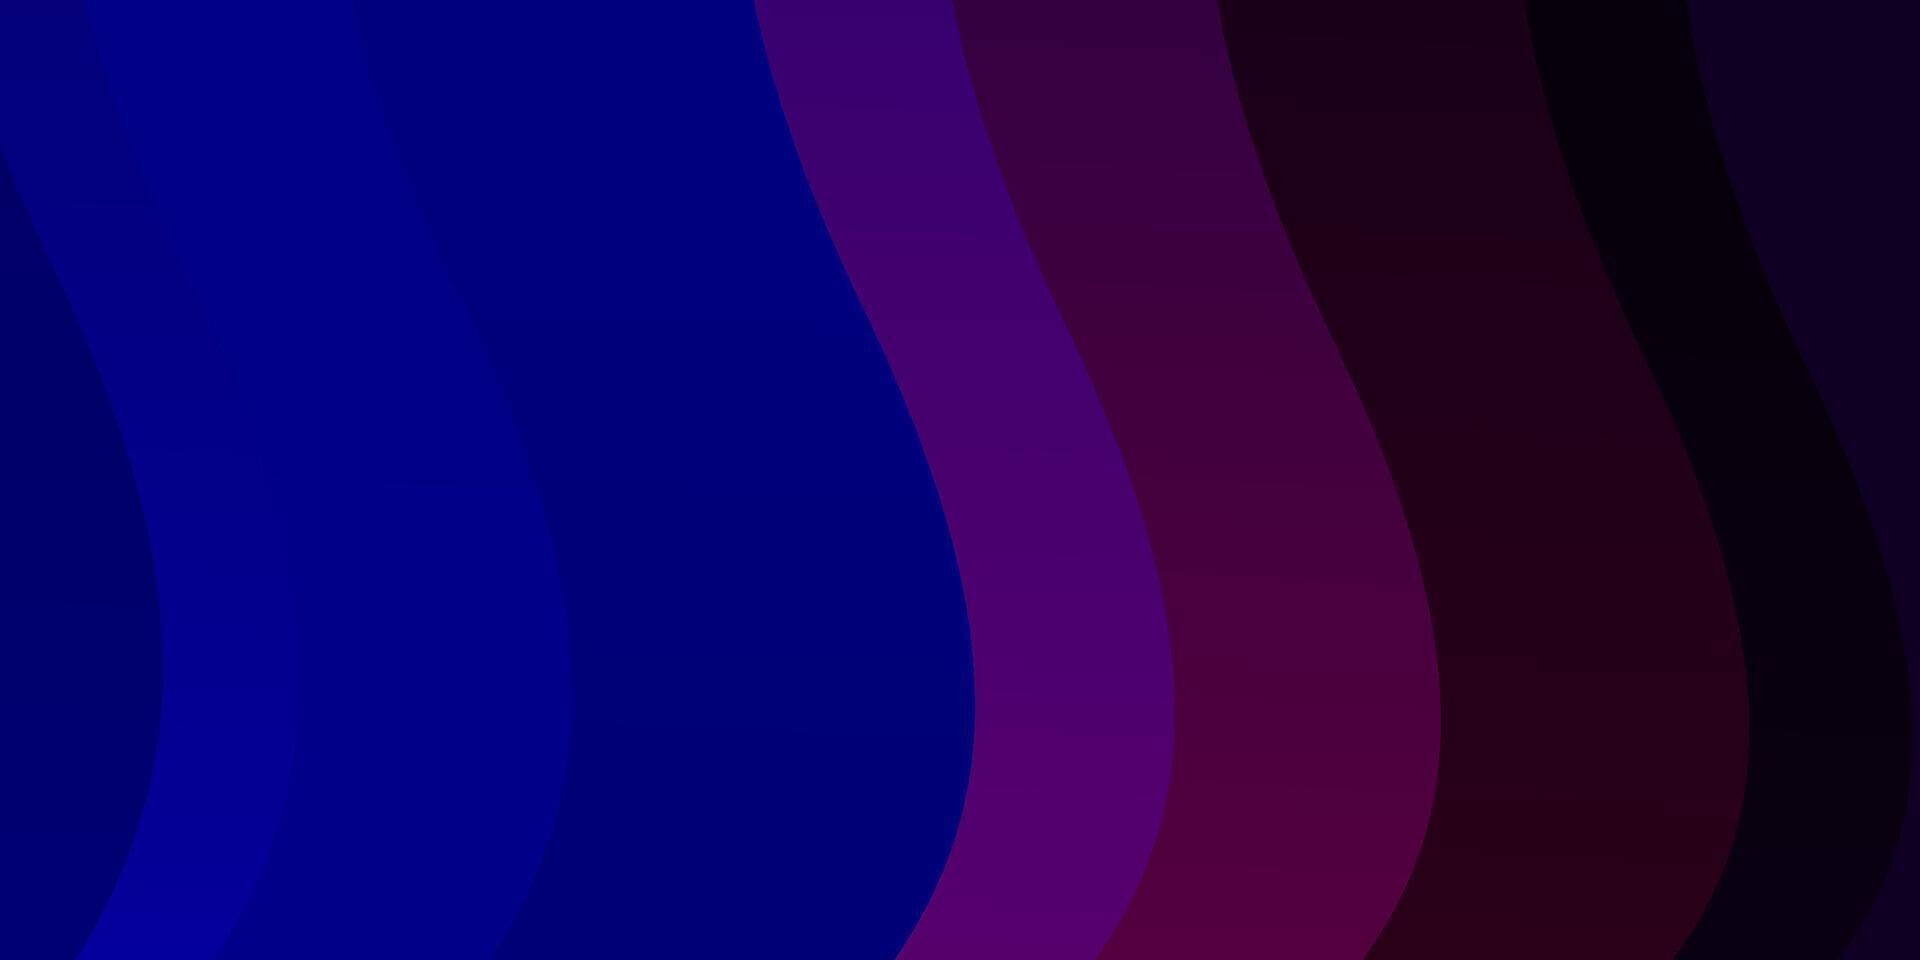 fundo vector azul e vermelho claro com curvas.